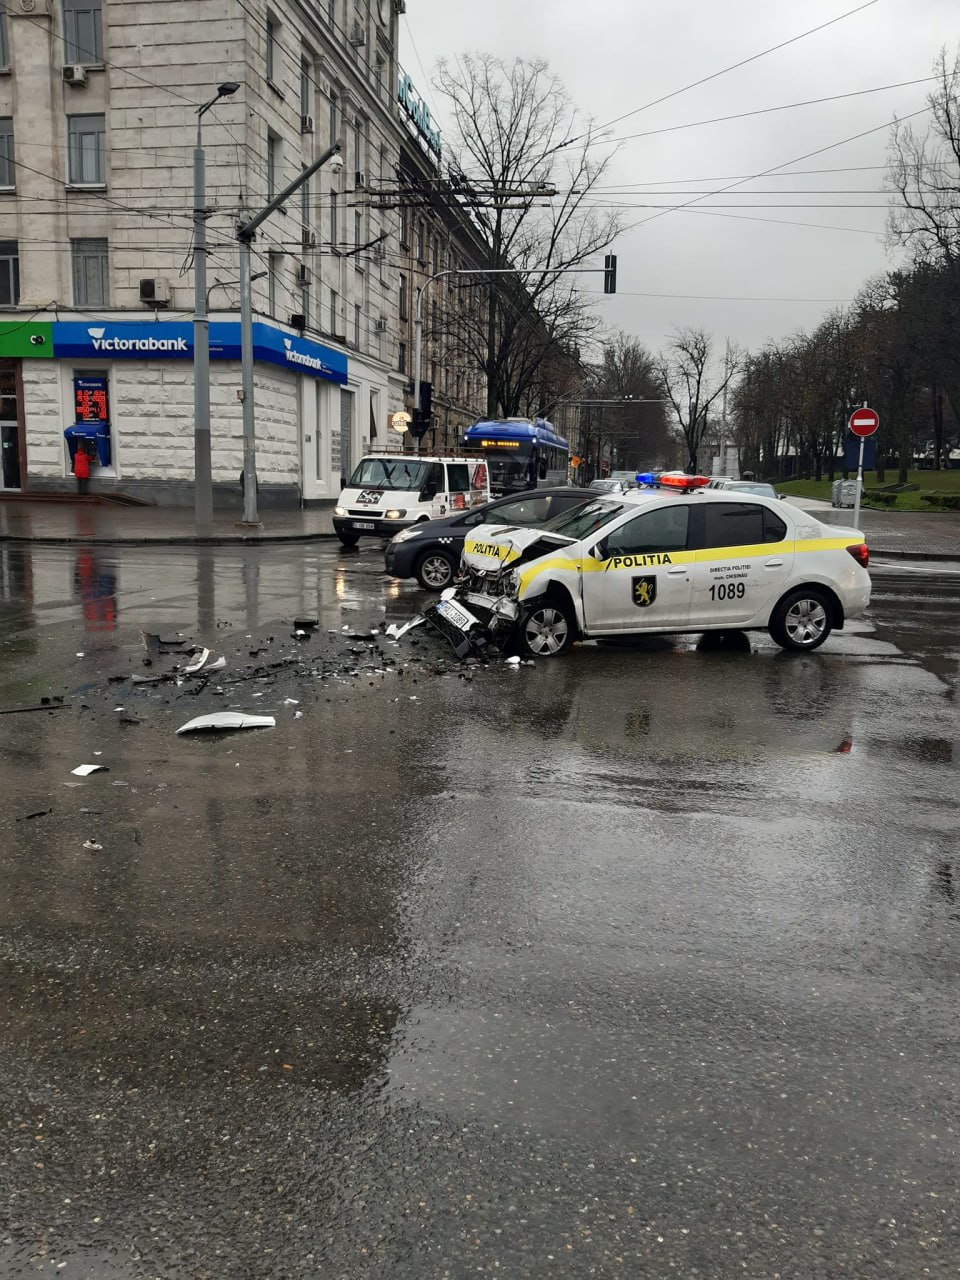 (ФОТО) В центре Кишинева полицейский автомобиль столкнулся со скорой помощью